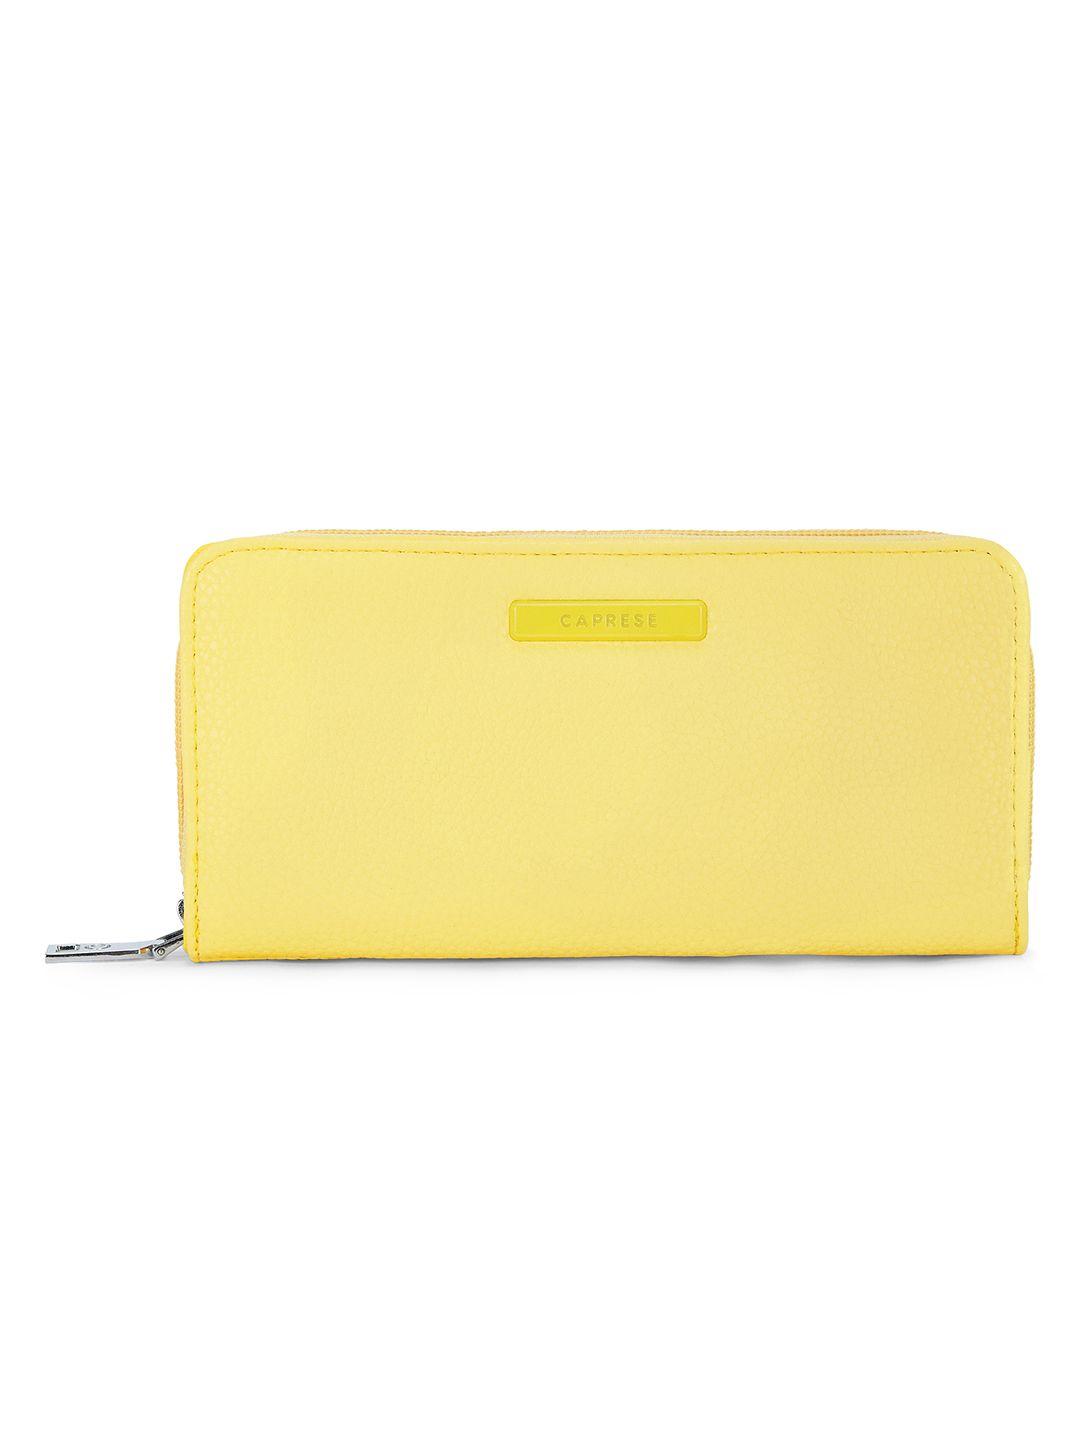 caprese women yellow solid zip around wallet